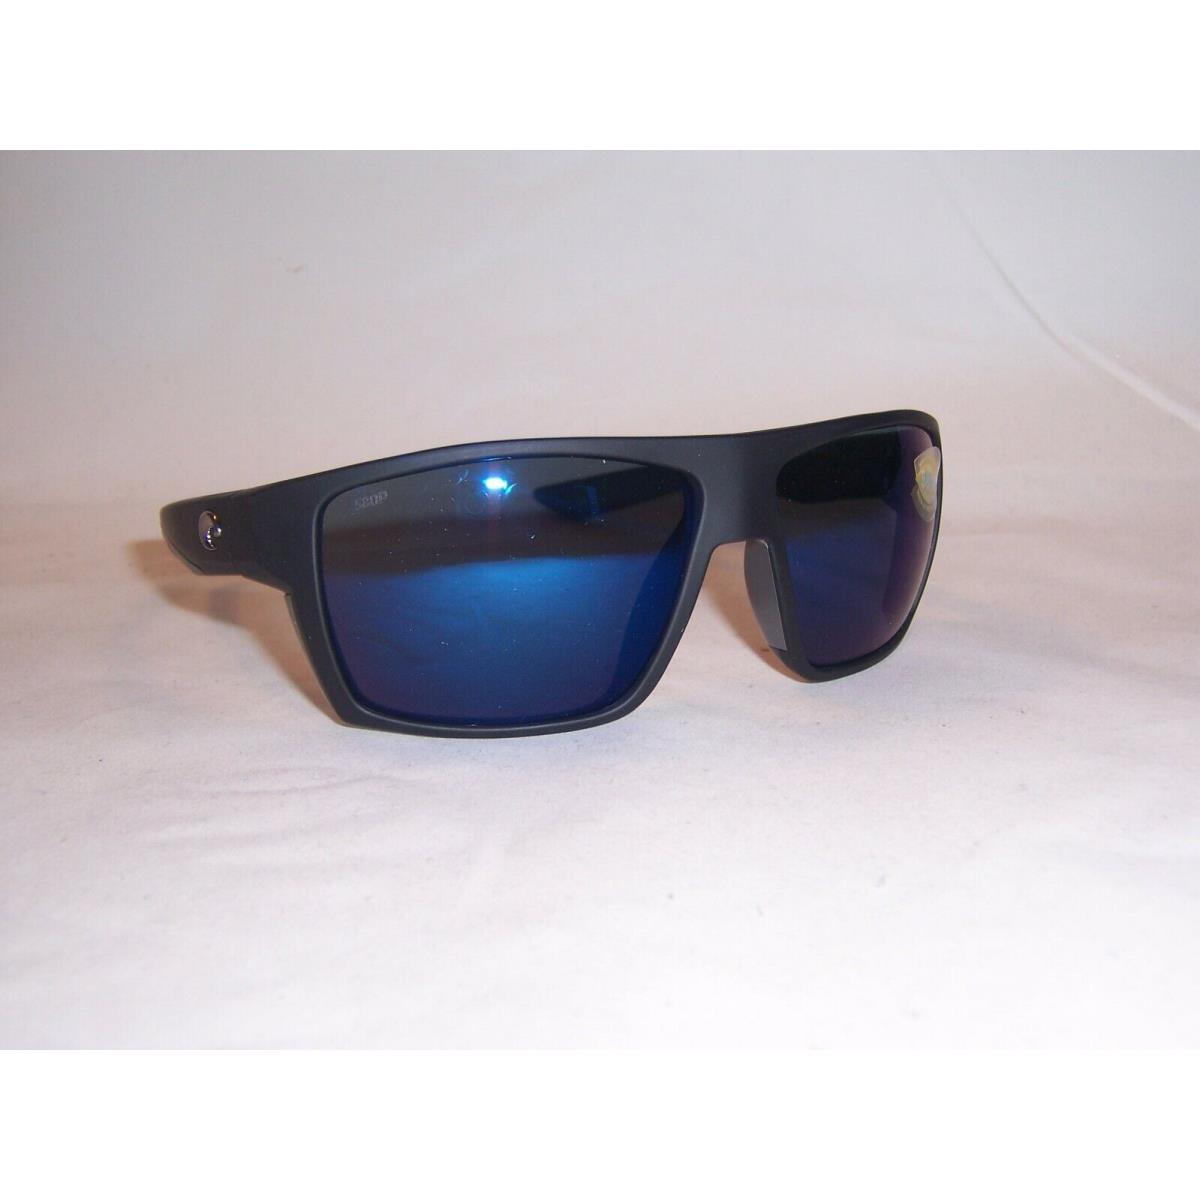 Costa Del Mar Bloke Sunglasses Black Gray/blue Mirror 580P Polarized